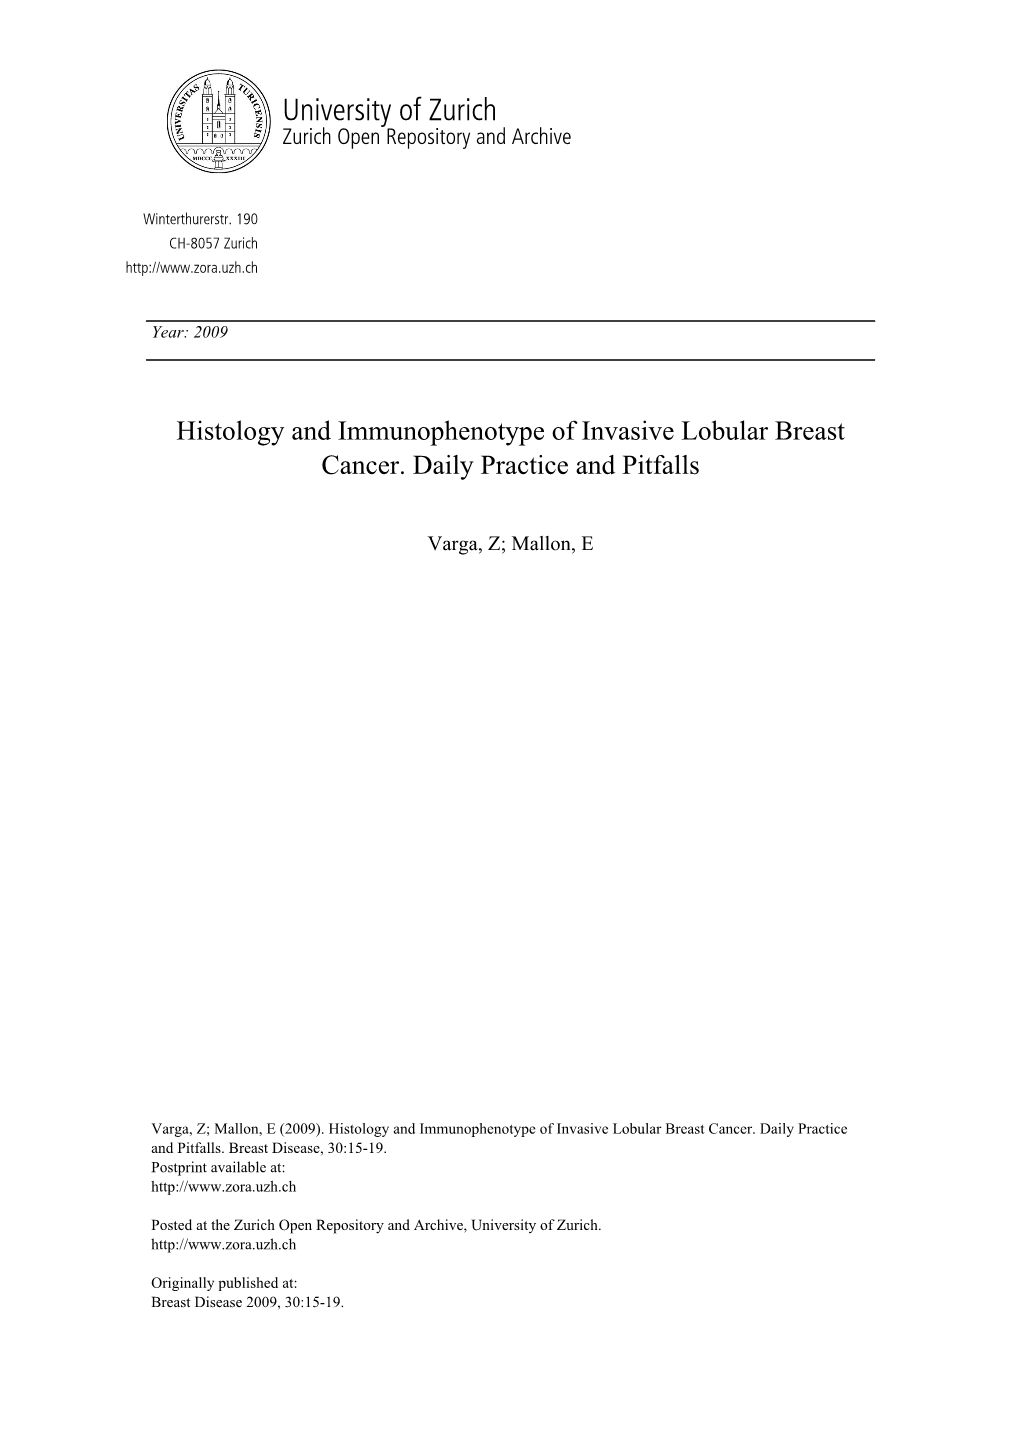 'Histology and Immunophenotype of Invasive Lobular Breast Cancer